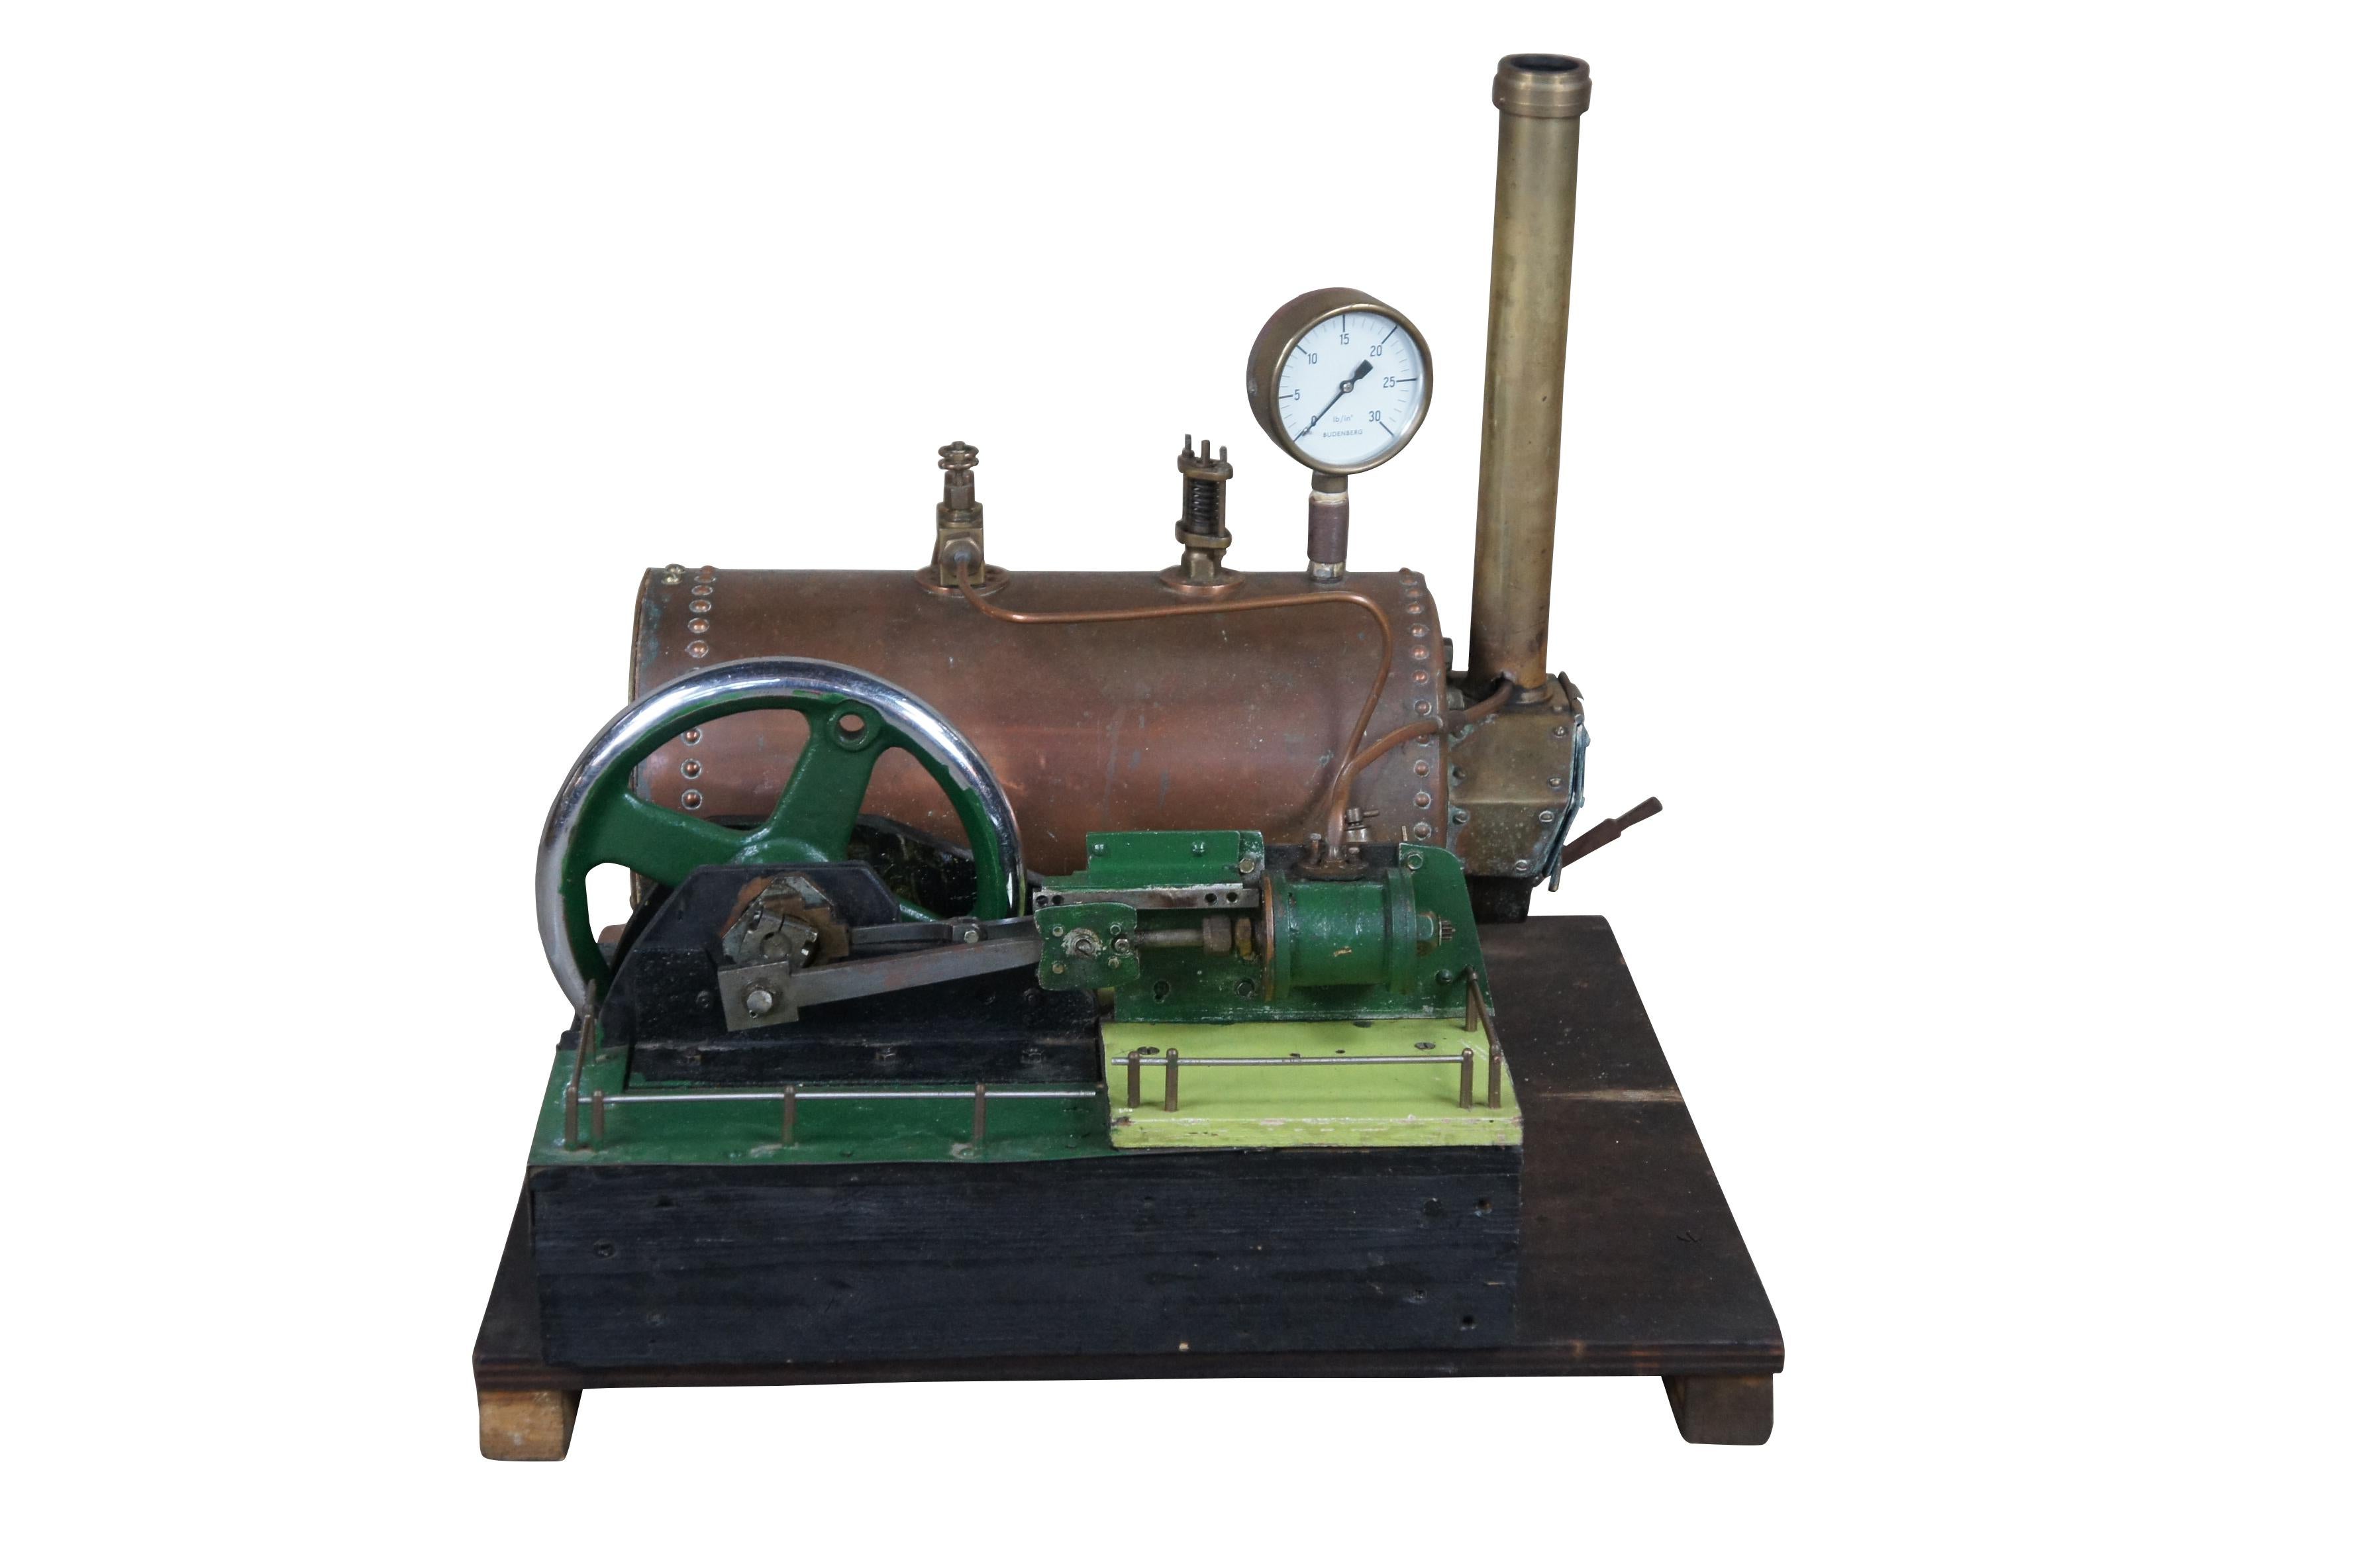 Antikes Modell einer stationären Dampfmaschine aus dem 19. Jahrhundert von Schaeffer & Budenberg.  Hergestellt aus Gusseisen mit Kupferkessel

Die Budenberg Gauge Company wurde 1918 gegründet. Die ursprüngliche Muttergesellschaft war Schäffer &